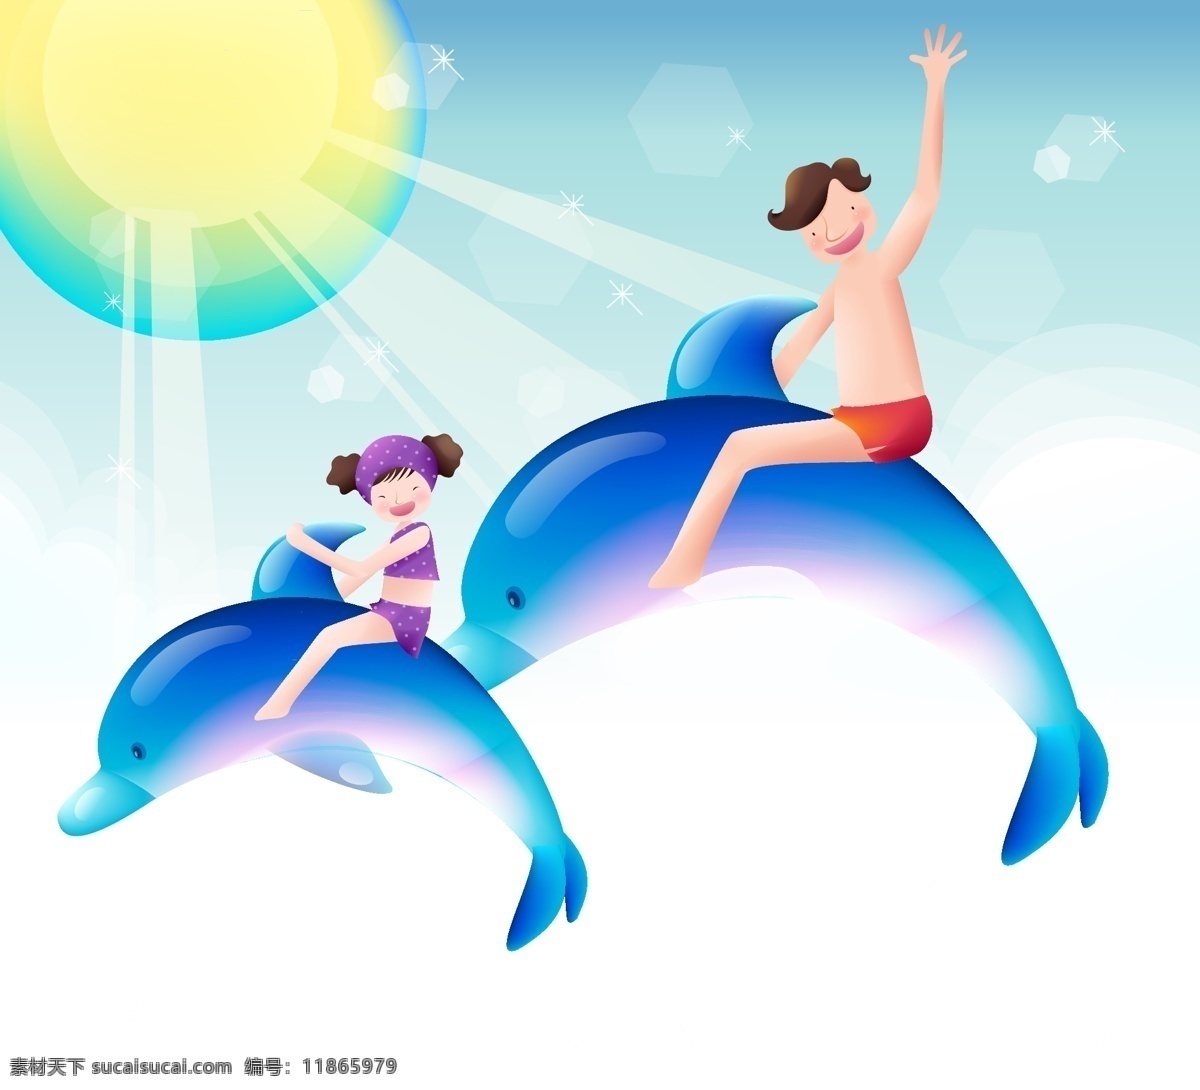 父女 游泳 海豚 卡通 矢量图 爸爸 海洋 可爱儿童卡通 蓝色 幼儿园 女儿 家庭 亲子 同乐 坊 温馨感人 矢量人物